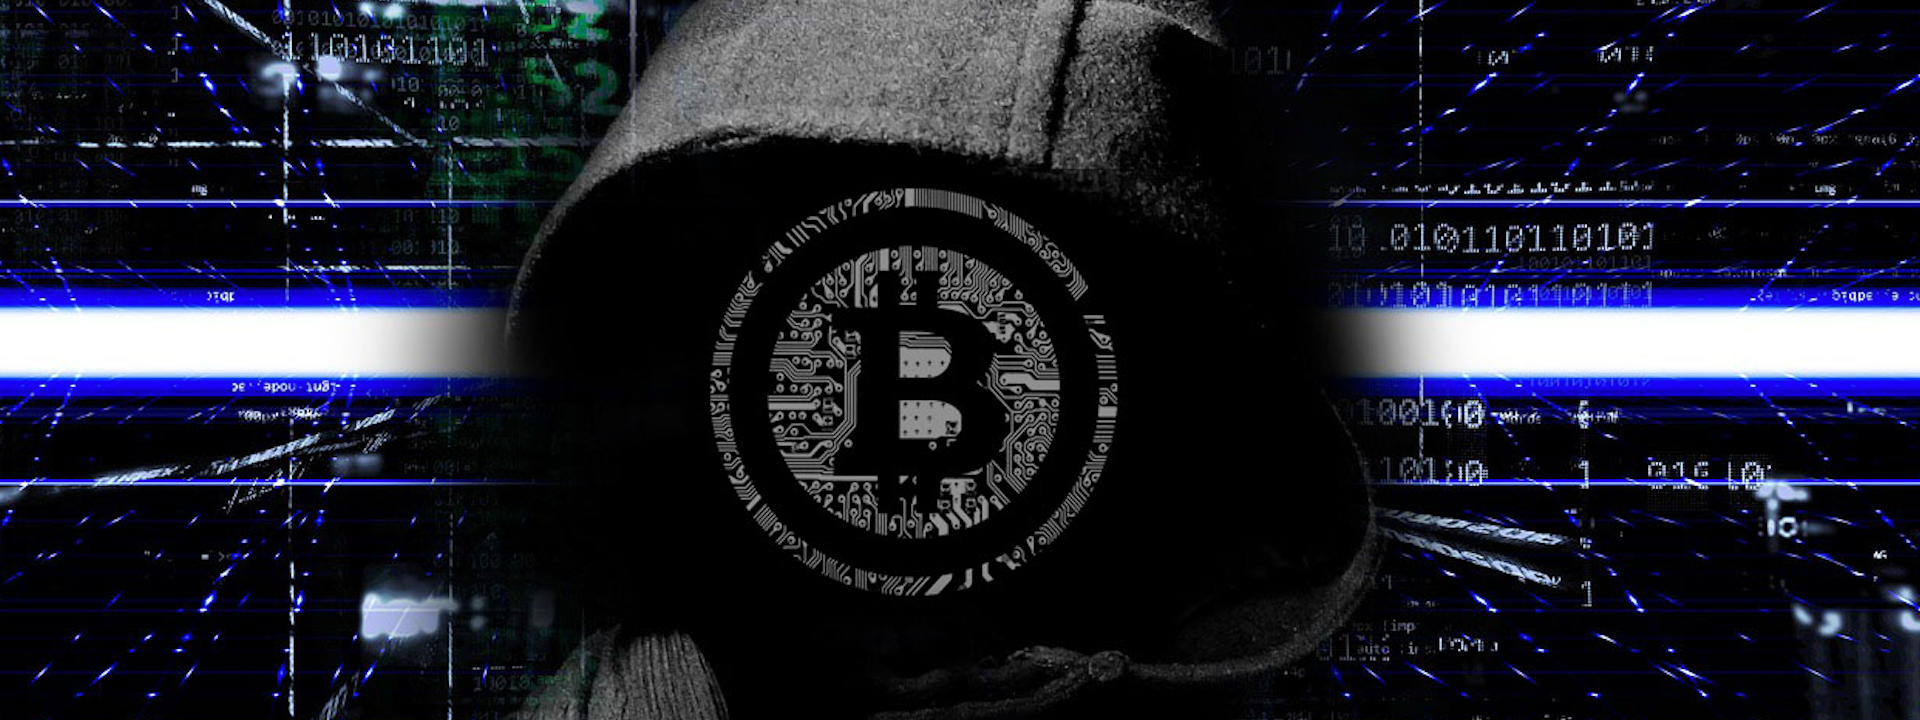 Khắp nước Mỹ bị dọa đánh bom, tống tiền bitcoin